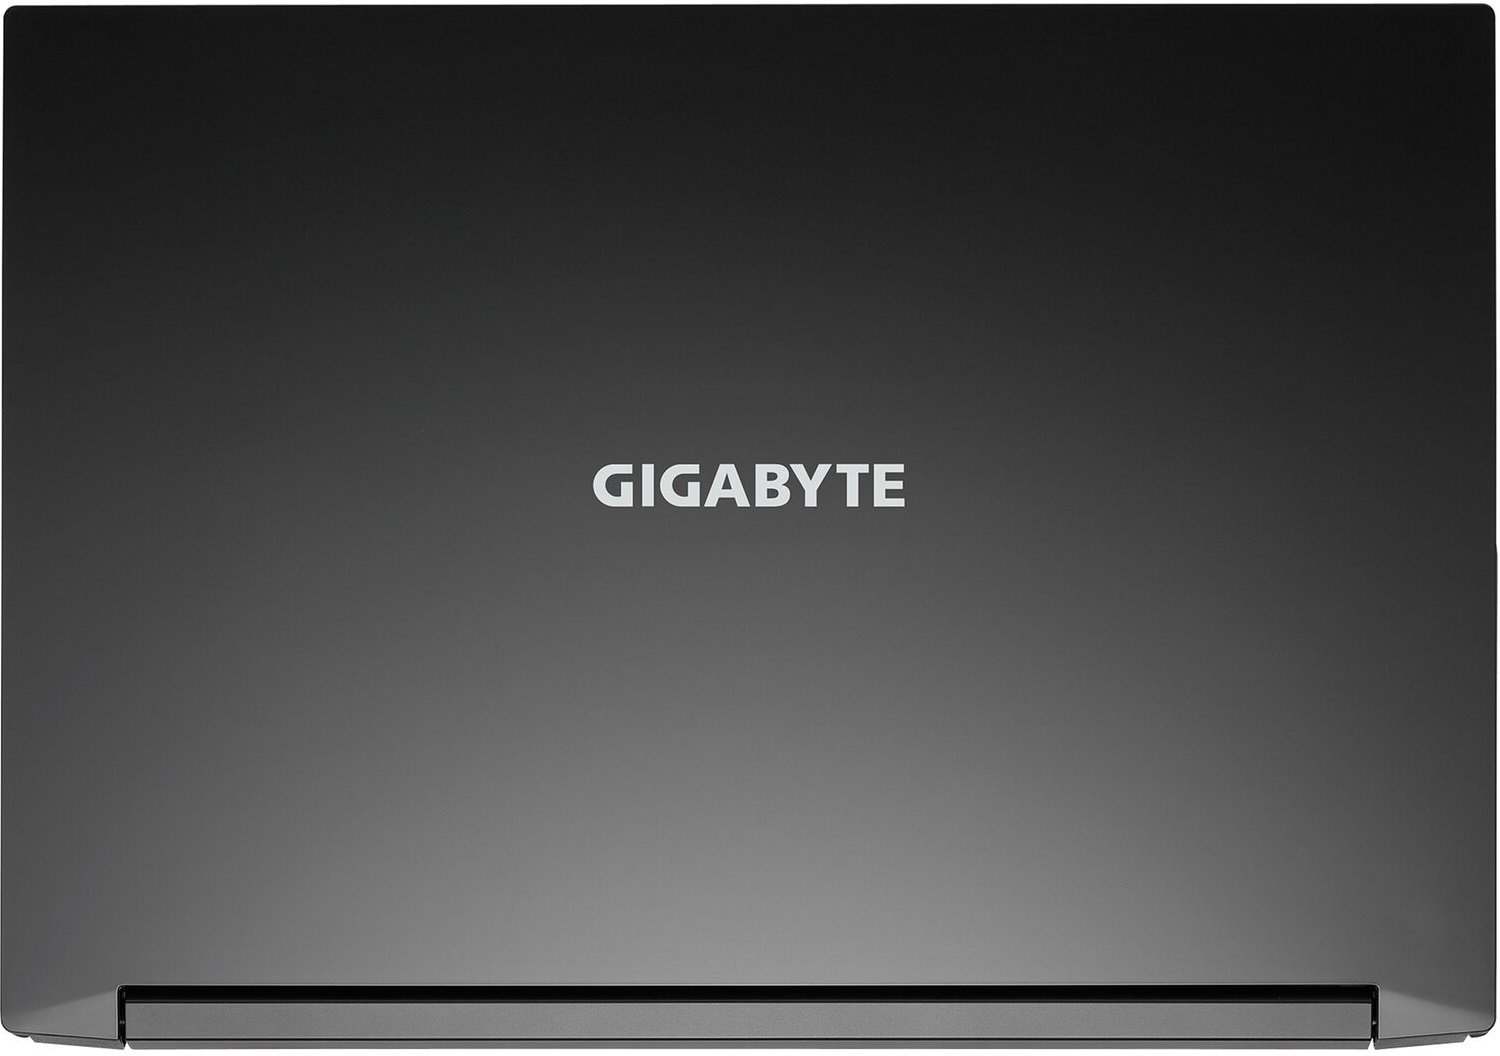 Gigabyte g5 kc. Ноутбук Gigabyte g5. G5 Kc-5us1130sh. Ноутбук игровой Gigabyte g5 KD-52ee123sd.